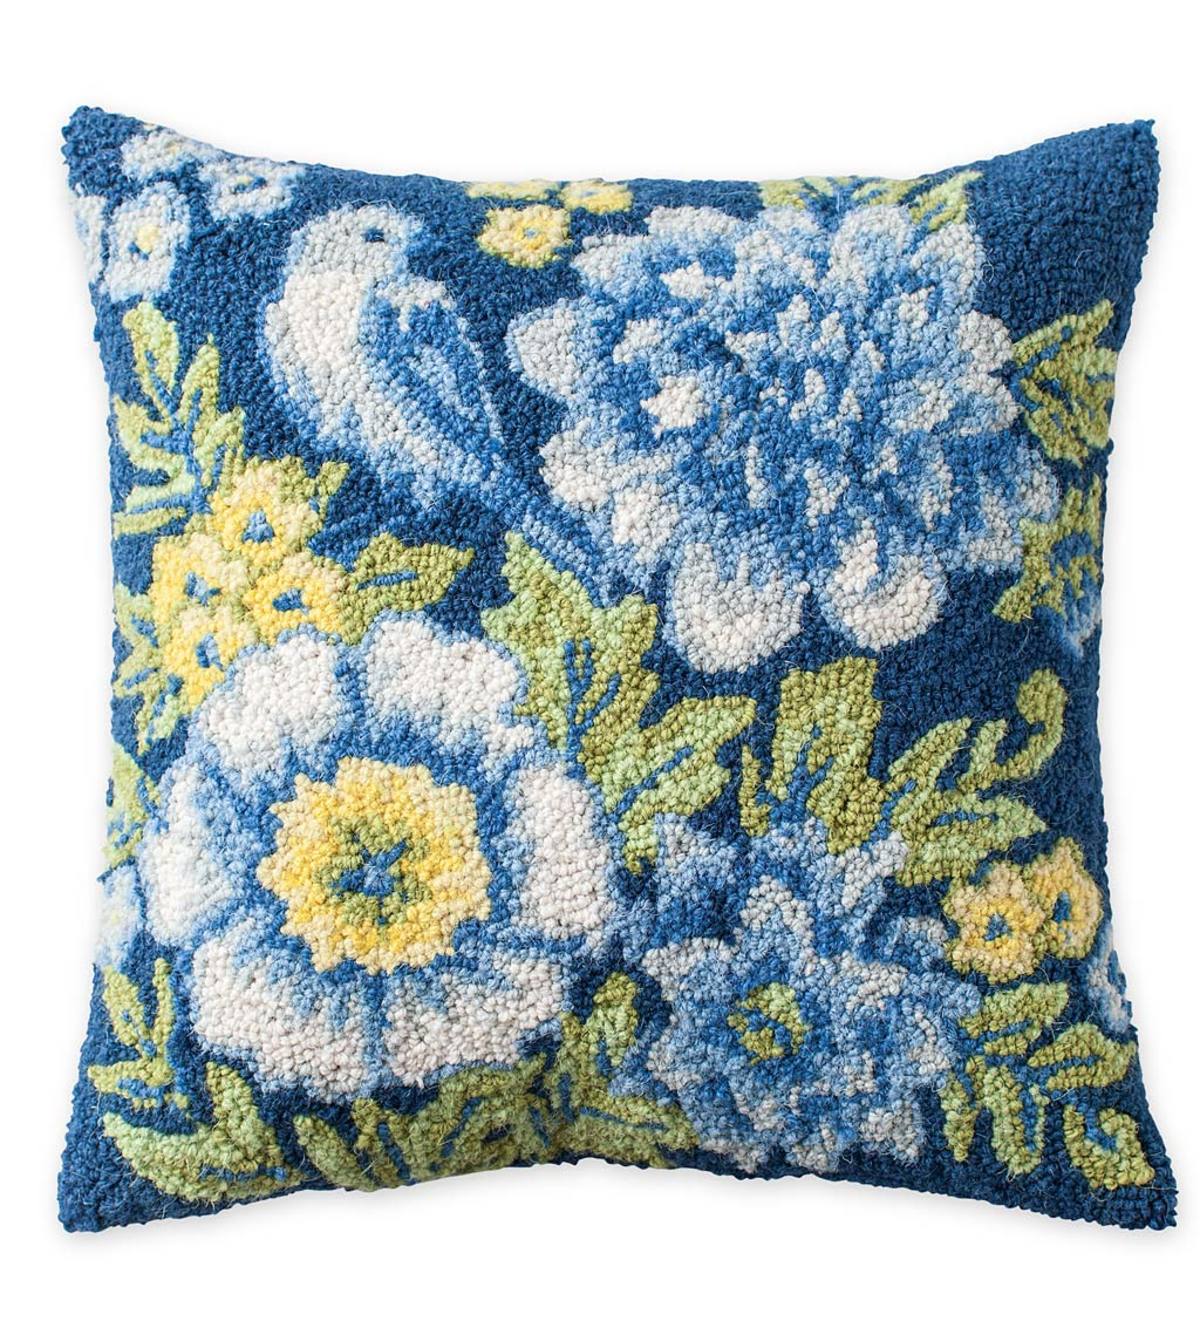 Hand-Hooked Wool Bluebird Throw Pillow